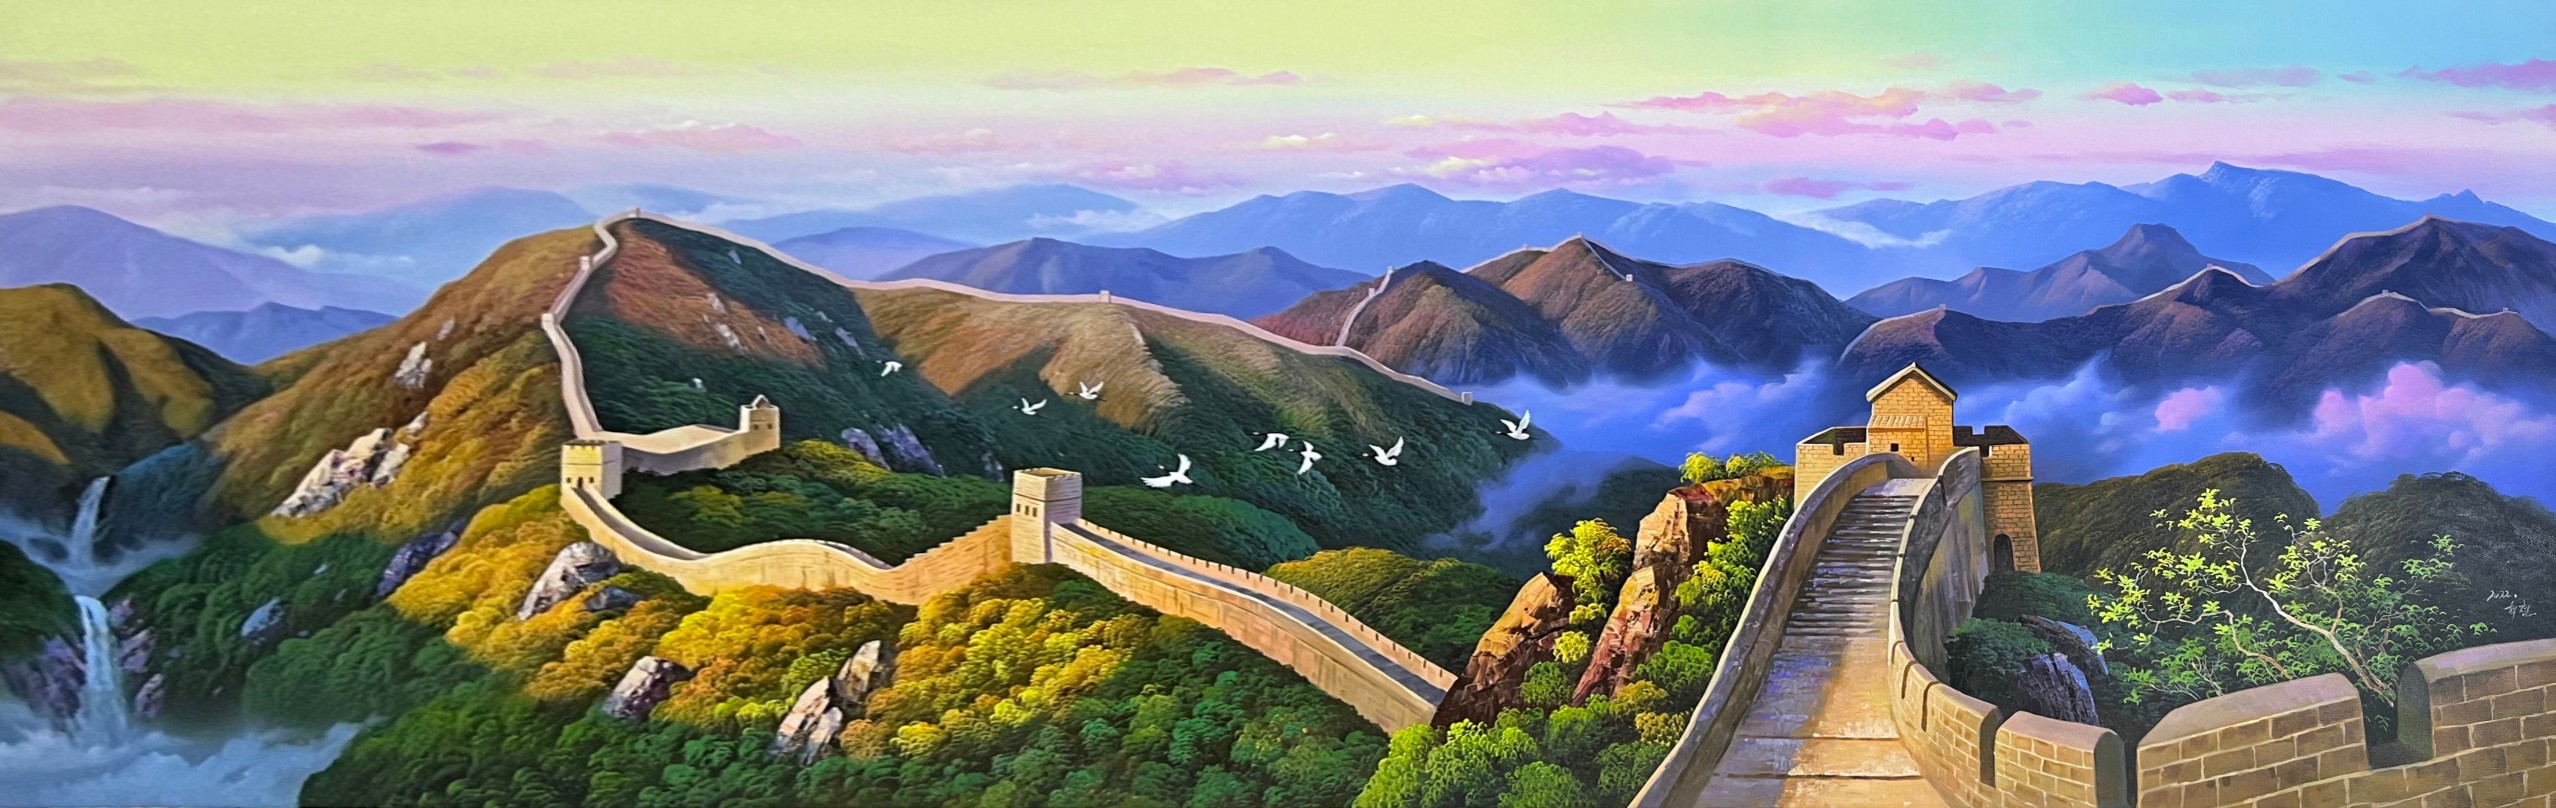 朝鲜油画风景图片大全图片